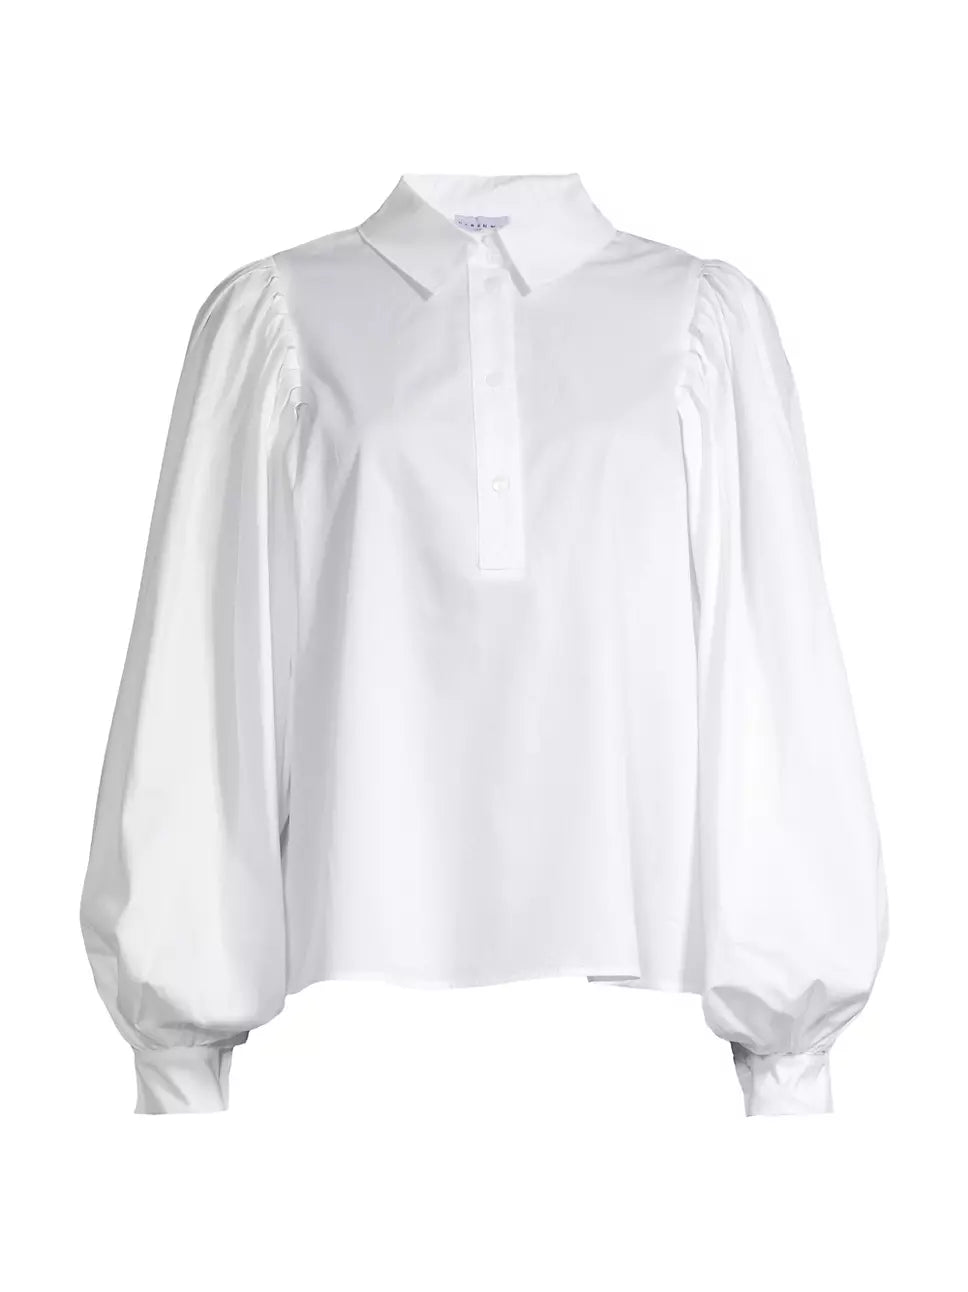 Harshman Lois Popover Shirt - White